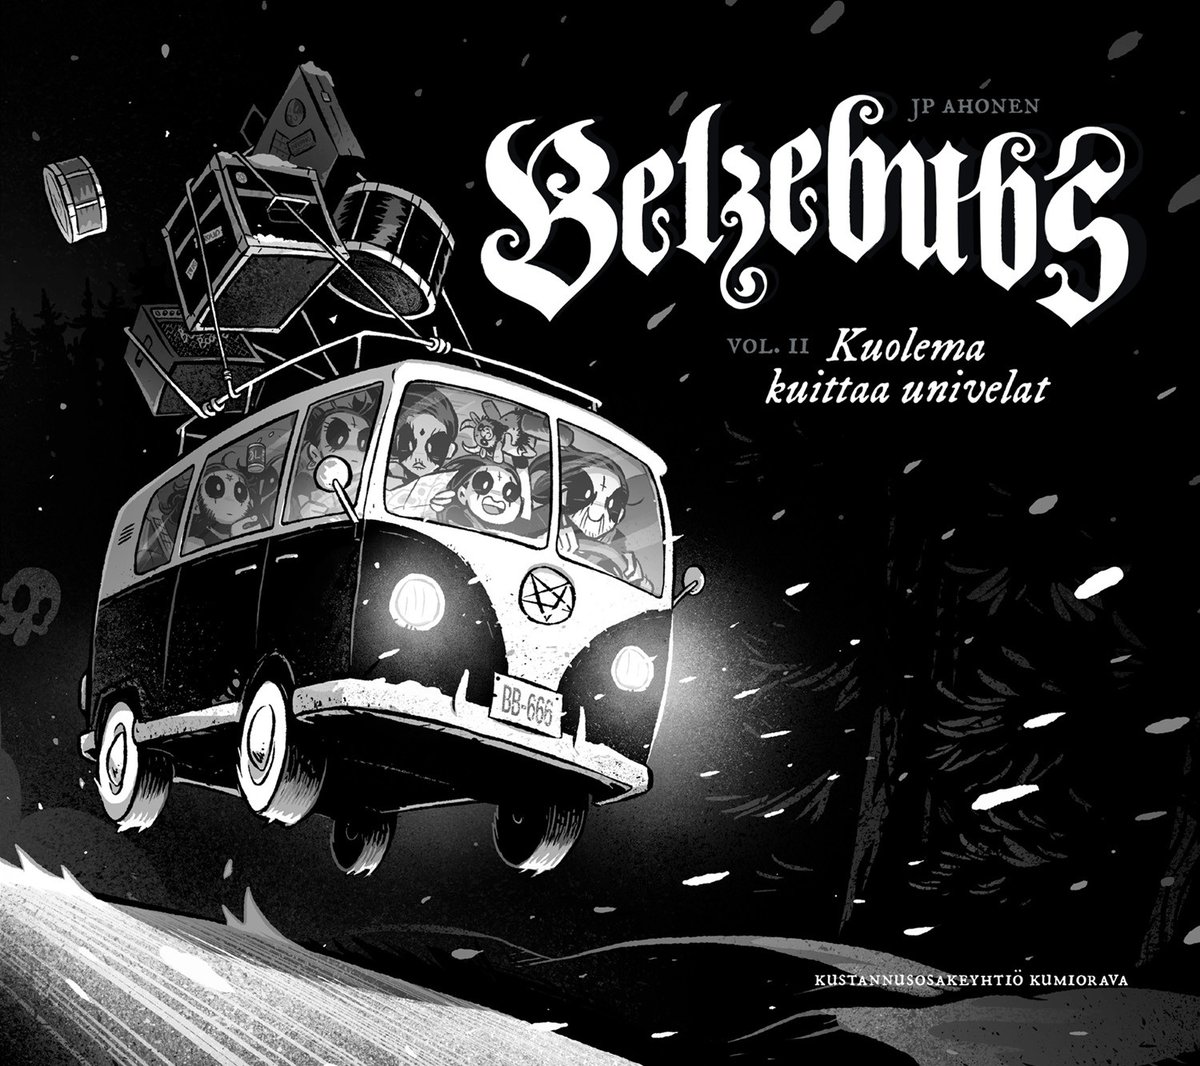 Hyvää suomalaisen musiikin ja Jean Sibeliuksen päivää!

Musiikkia kaupaltamme sarjakuvakauppa.fi/catalogsearch/…
#jeansibelius #sarjakuvat